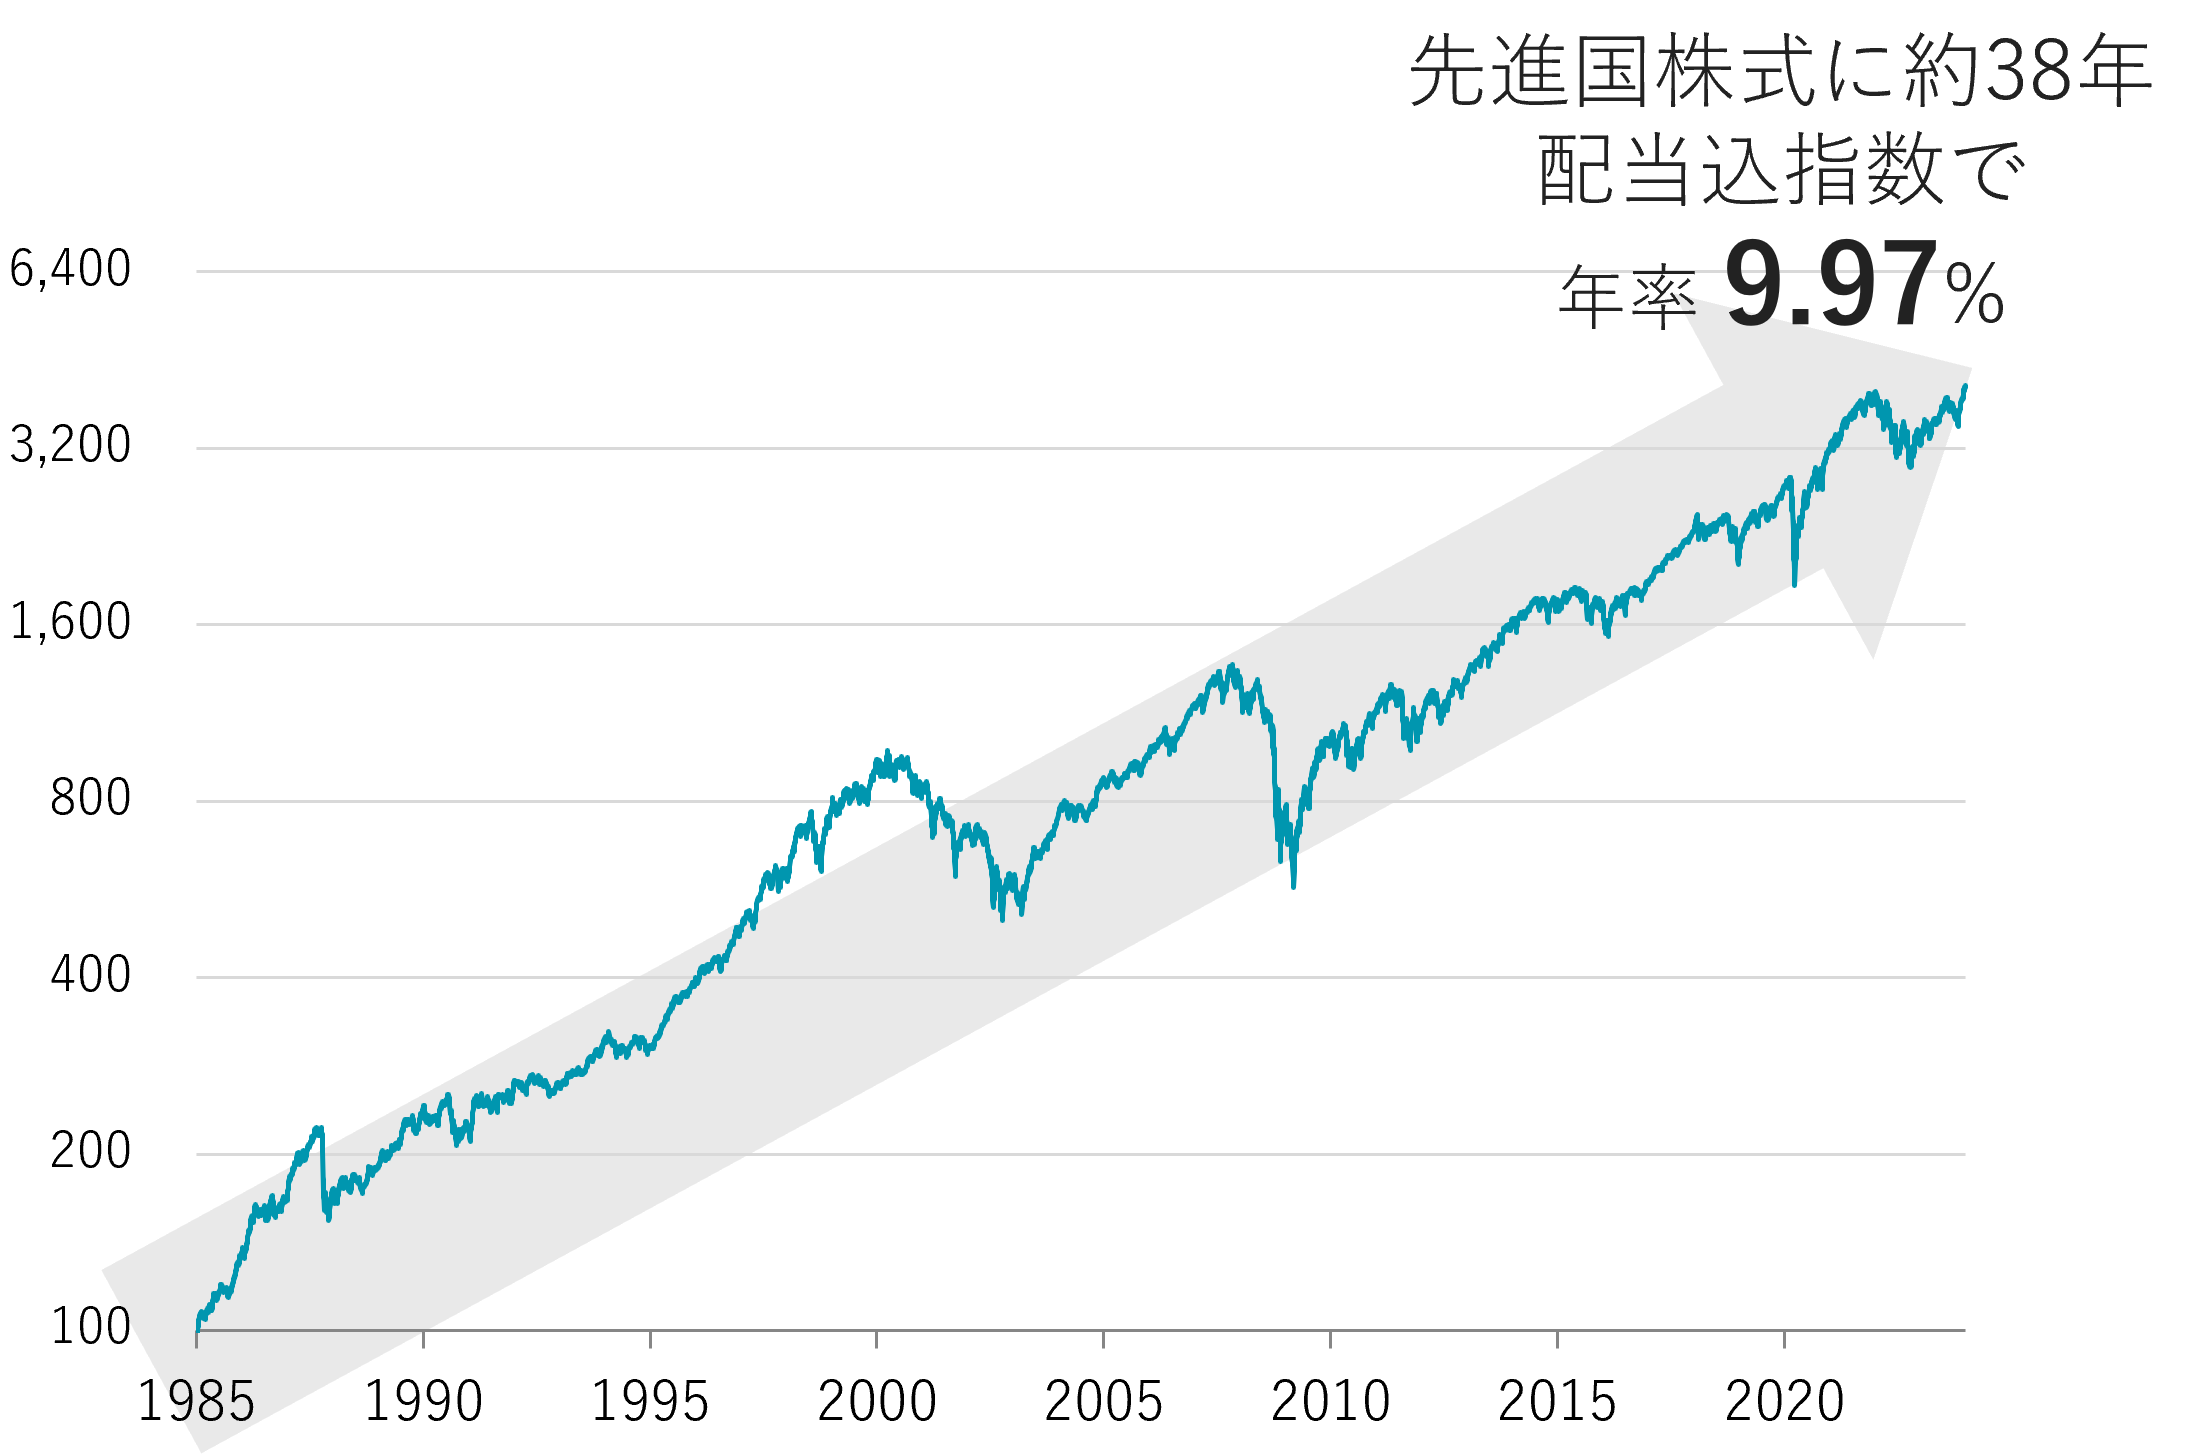 1985年からの38年にわたる先進国株式指数配当込み指数の推移。リターンを年率換算すると9.97％となることを示すグラフ